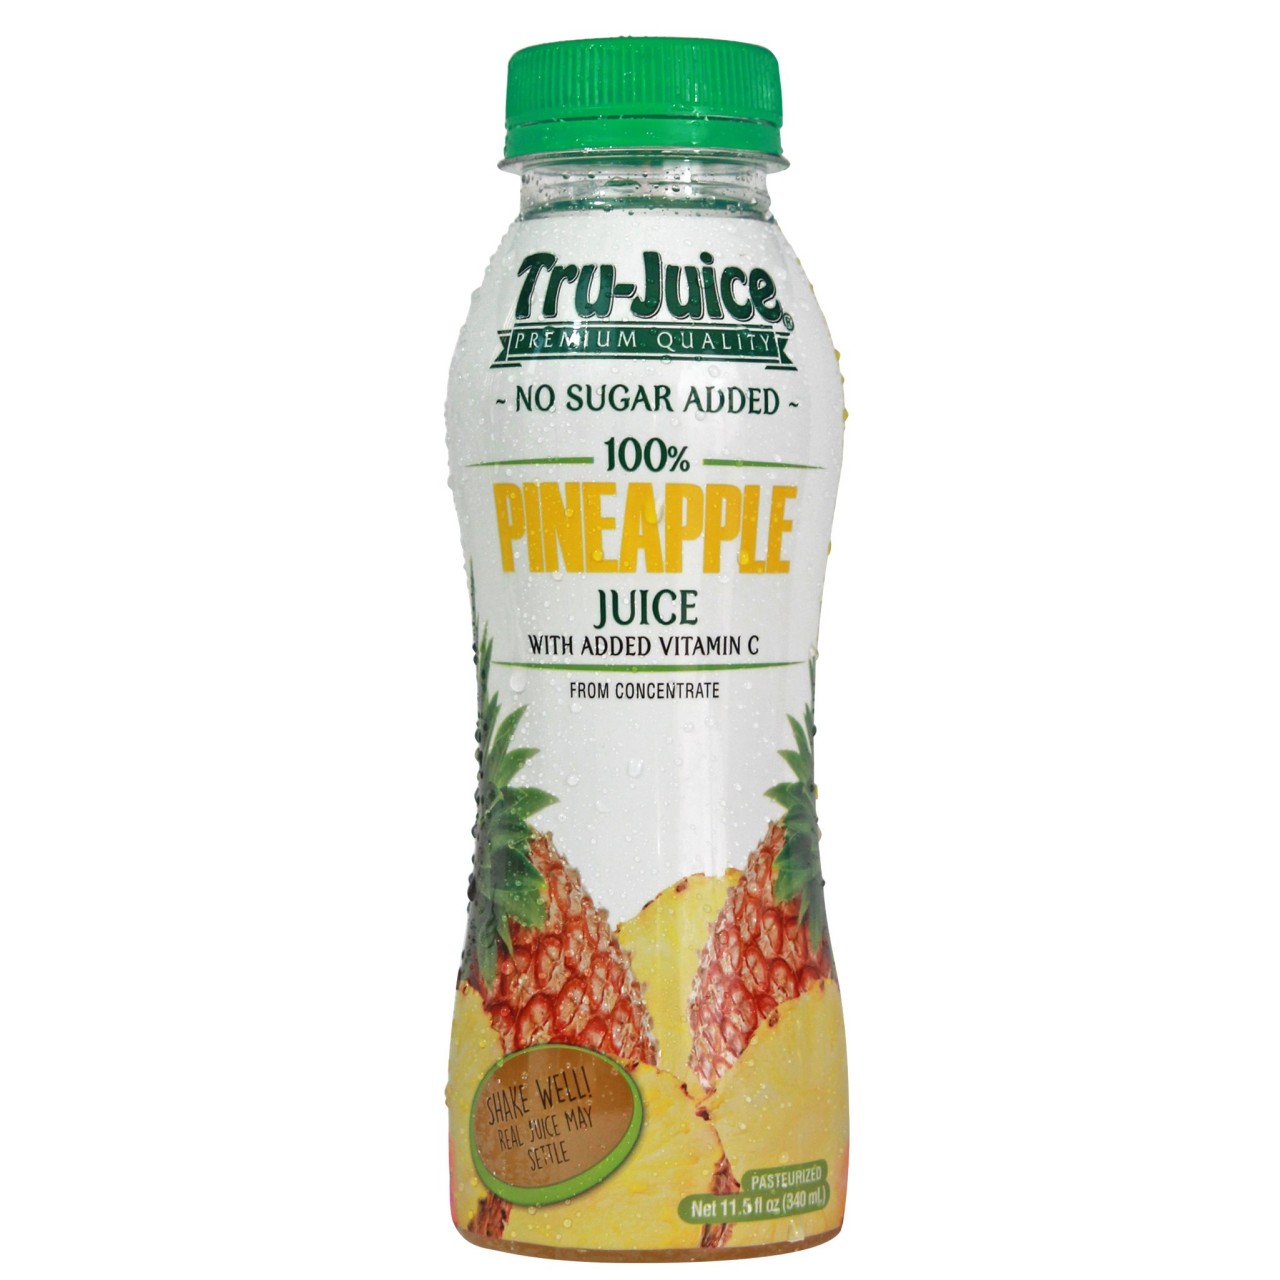 Pre-Order A Bottle of Natural Tru-Juice Drink Online